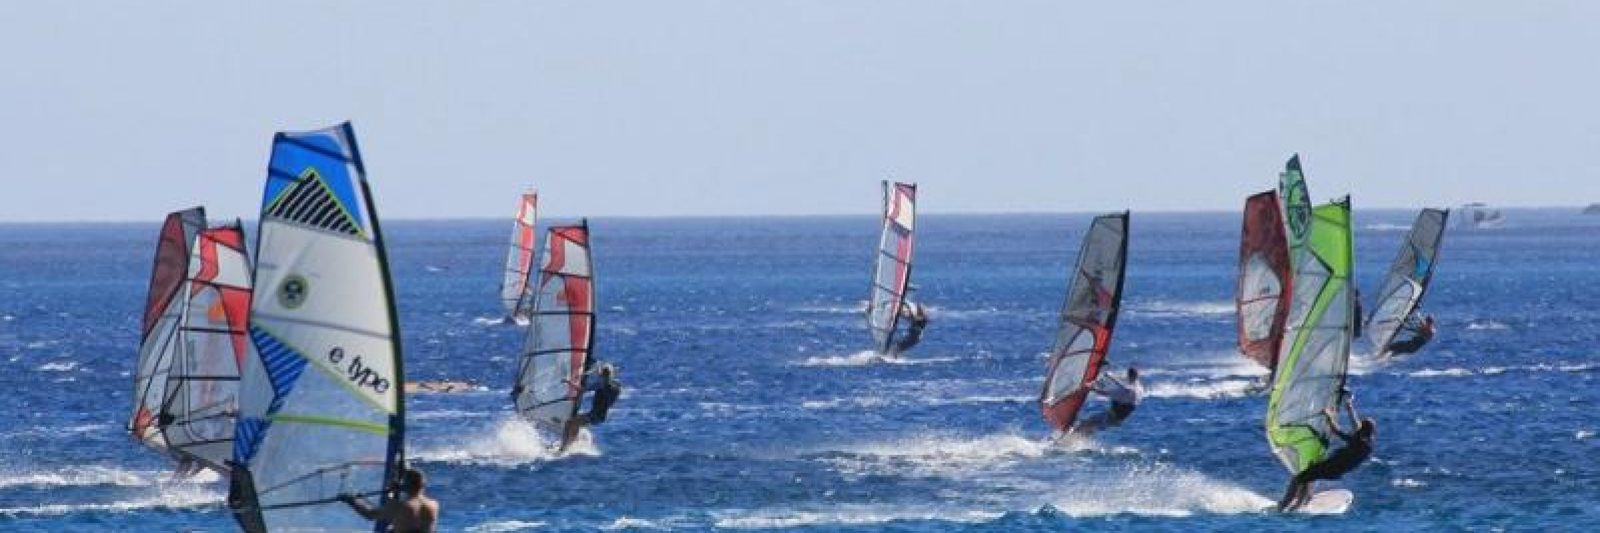 Sport réputé windsurf carnac plage st coloban